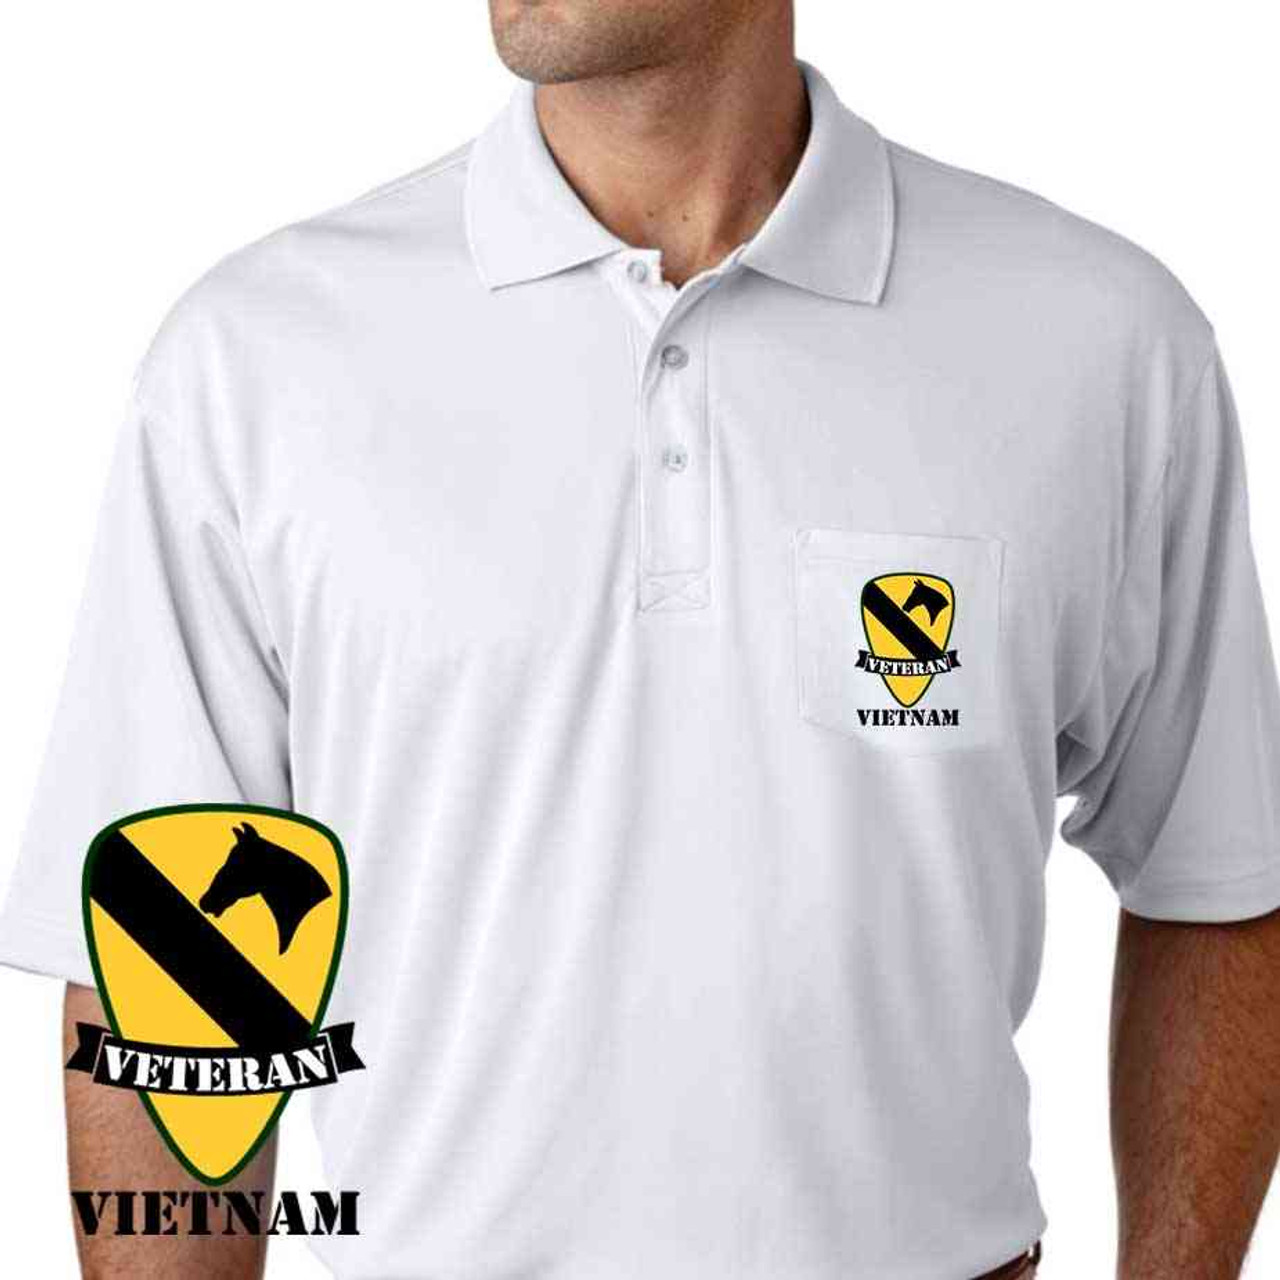 army 1st cavalry div vietnam veteran performance pocket polo shirt